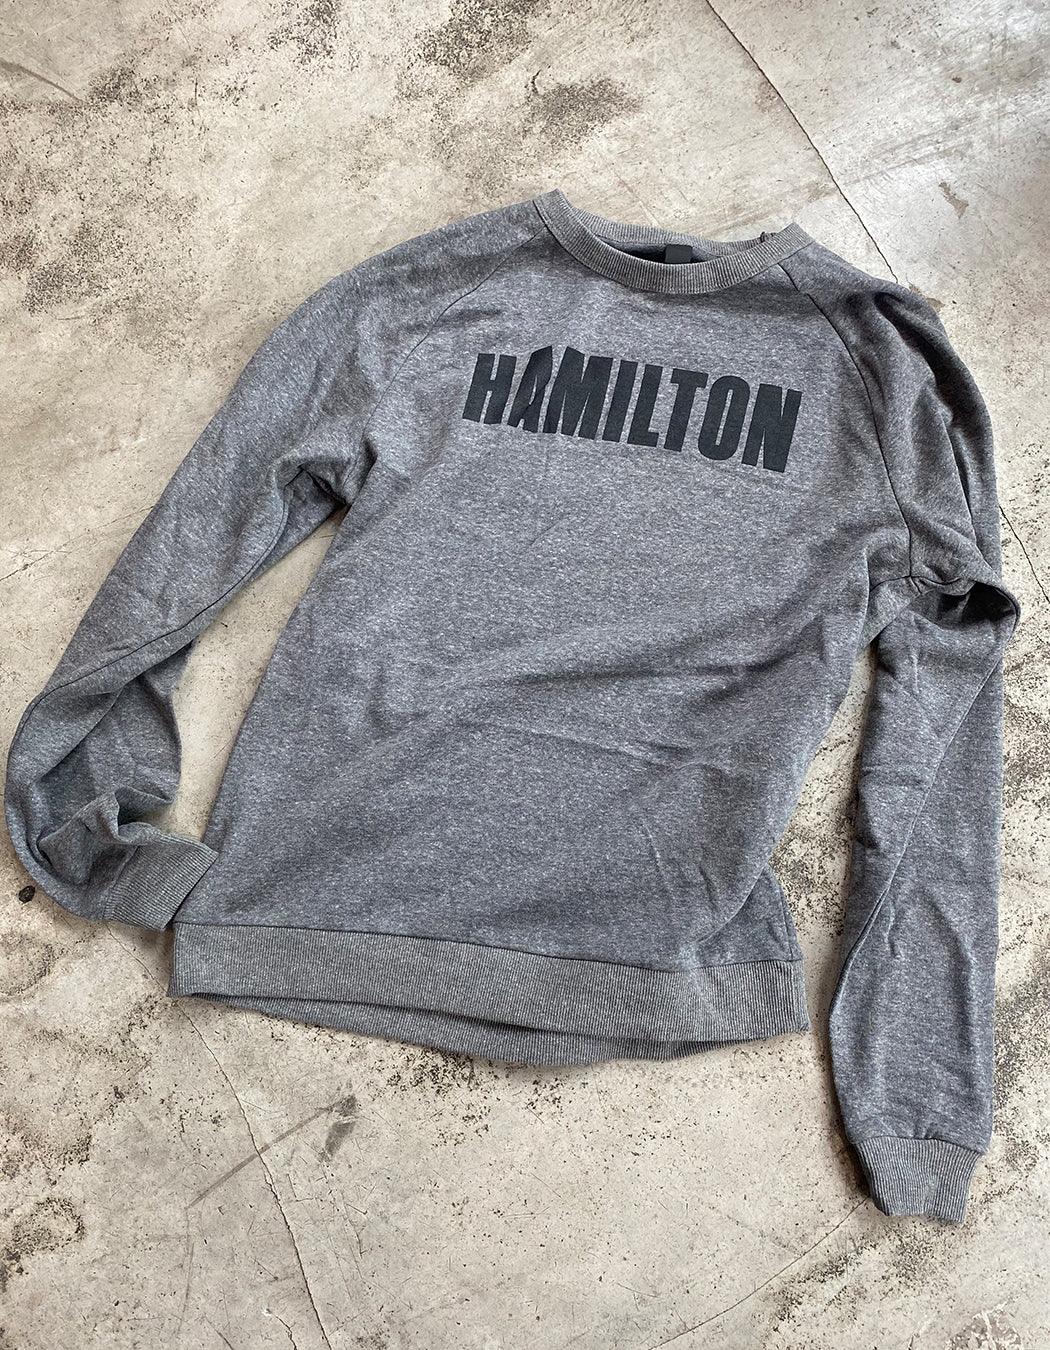 Hamilton Gray Crewneck Sweatshirt